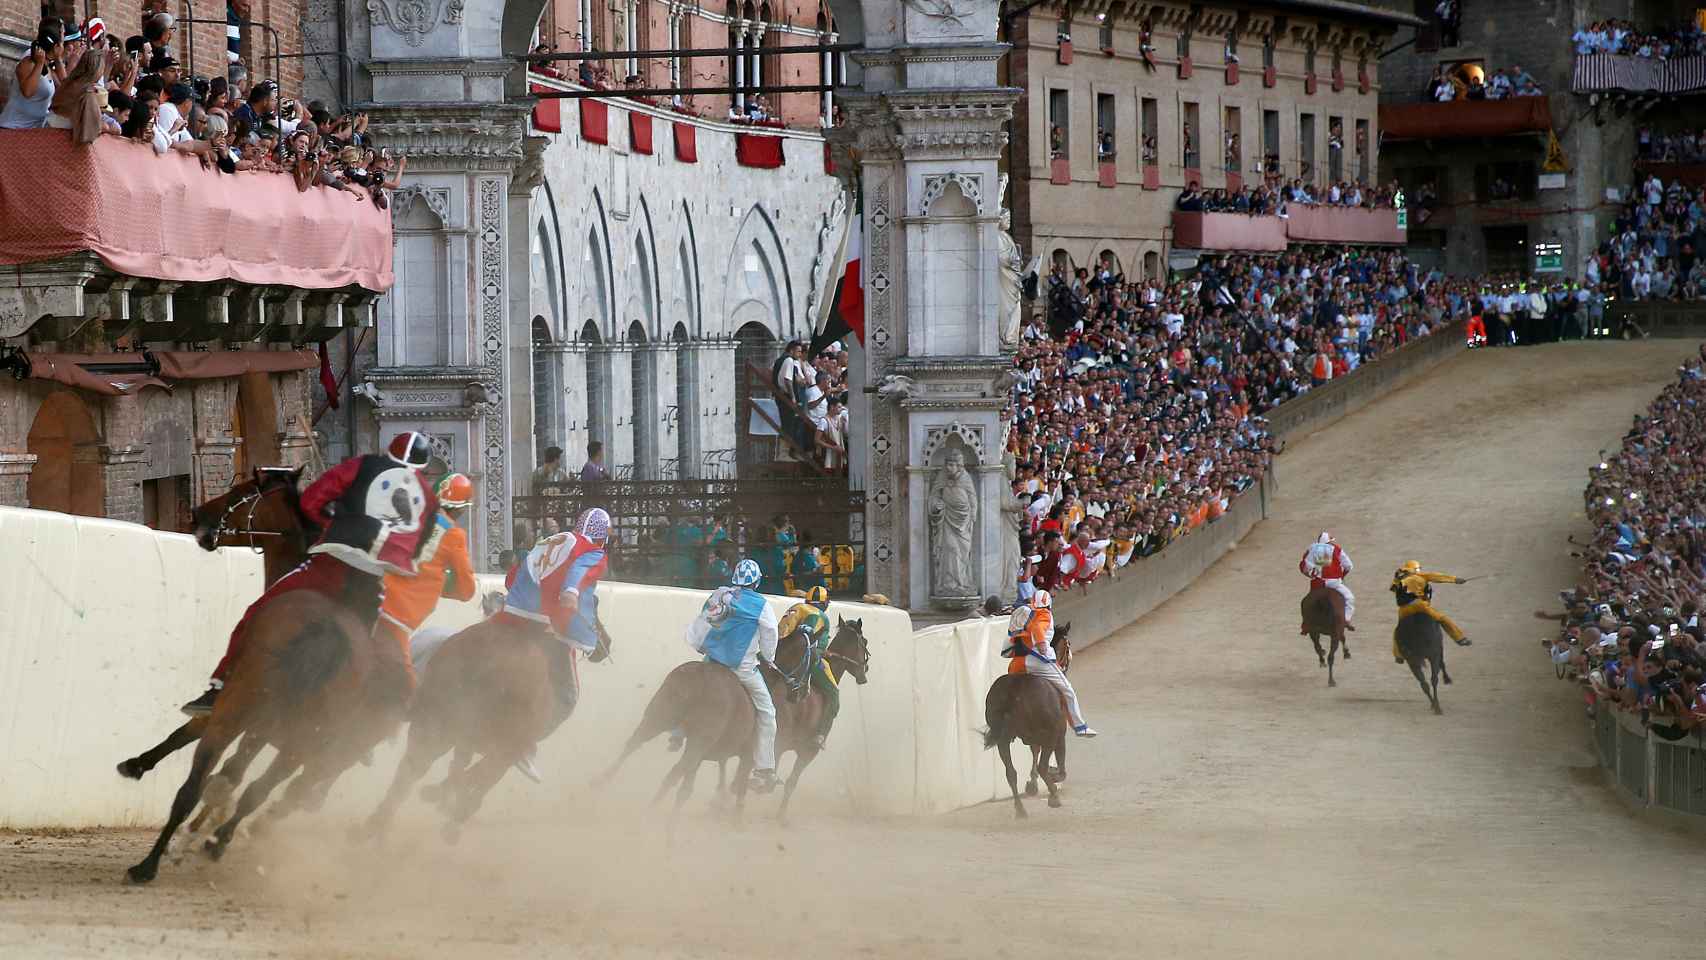 La carrera es el acontecimiento del año en Siena desde tiempos de la Edad Media / Reuters